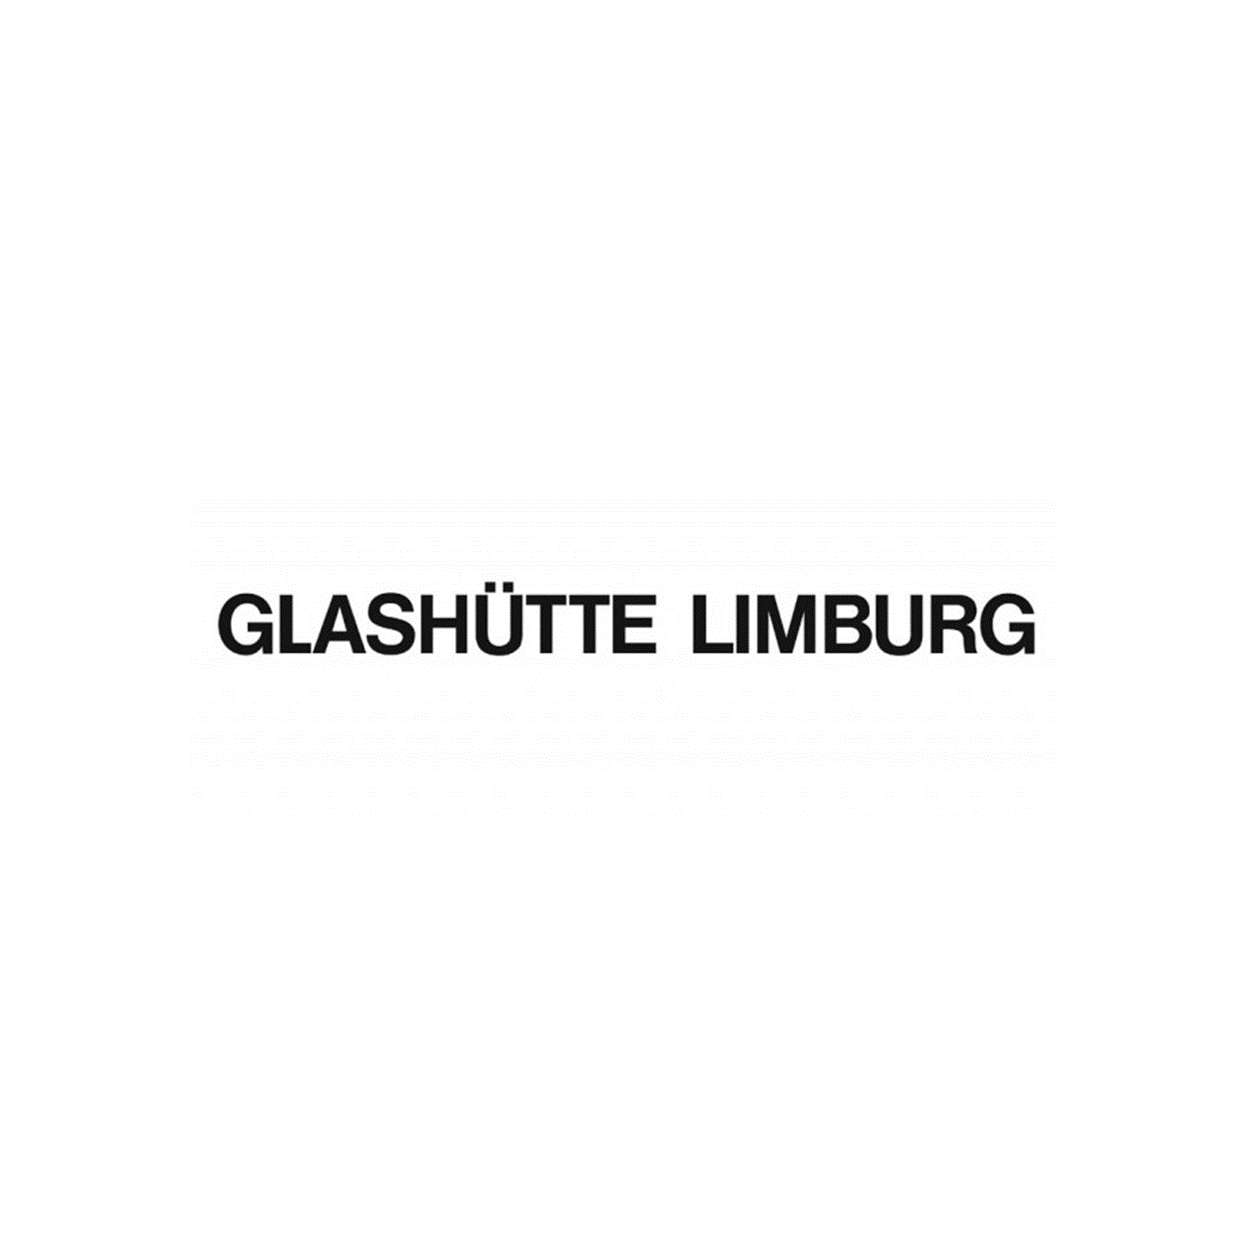 Glashütte - Objekte Licht & Raum GmbH in Hamburg